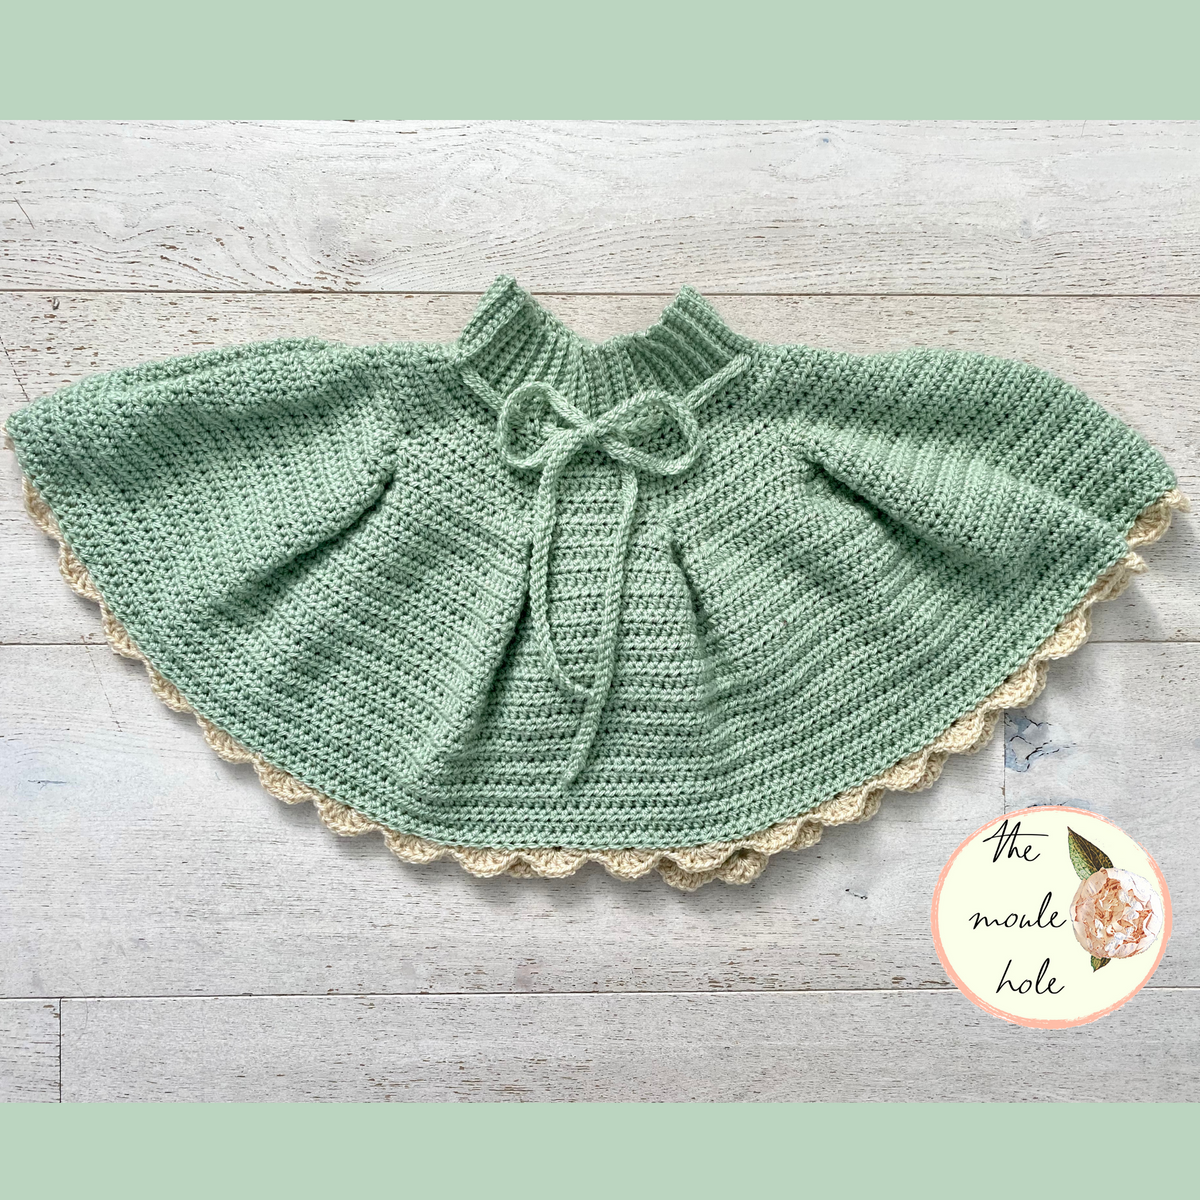 10 Sweet Crochet Skirt Patterns for Girls! - moogly